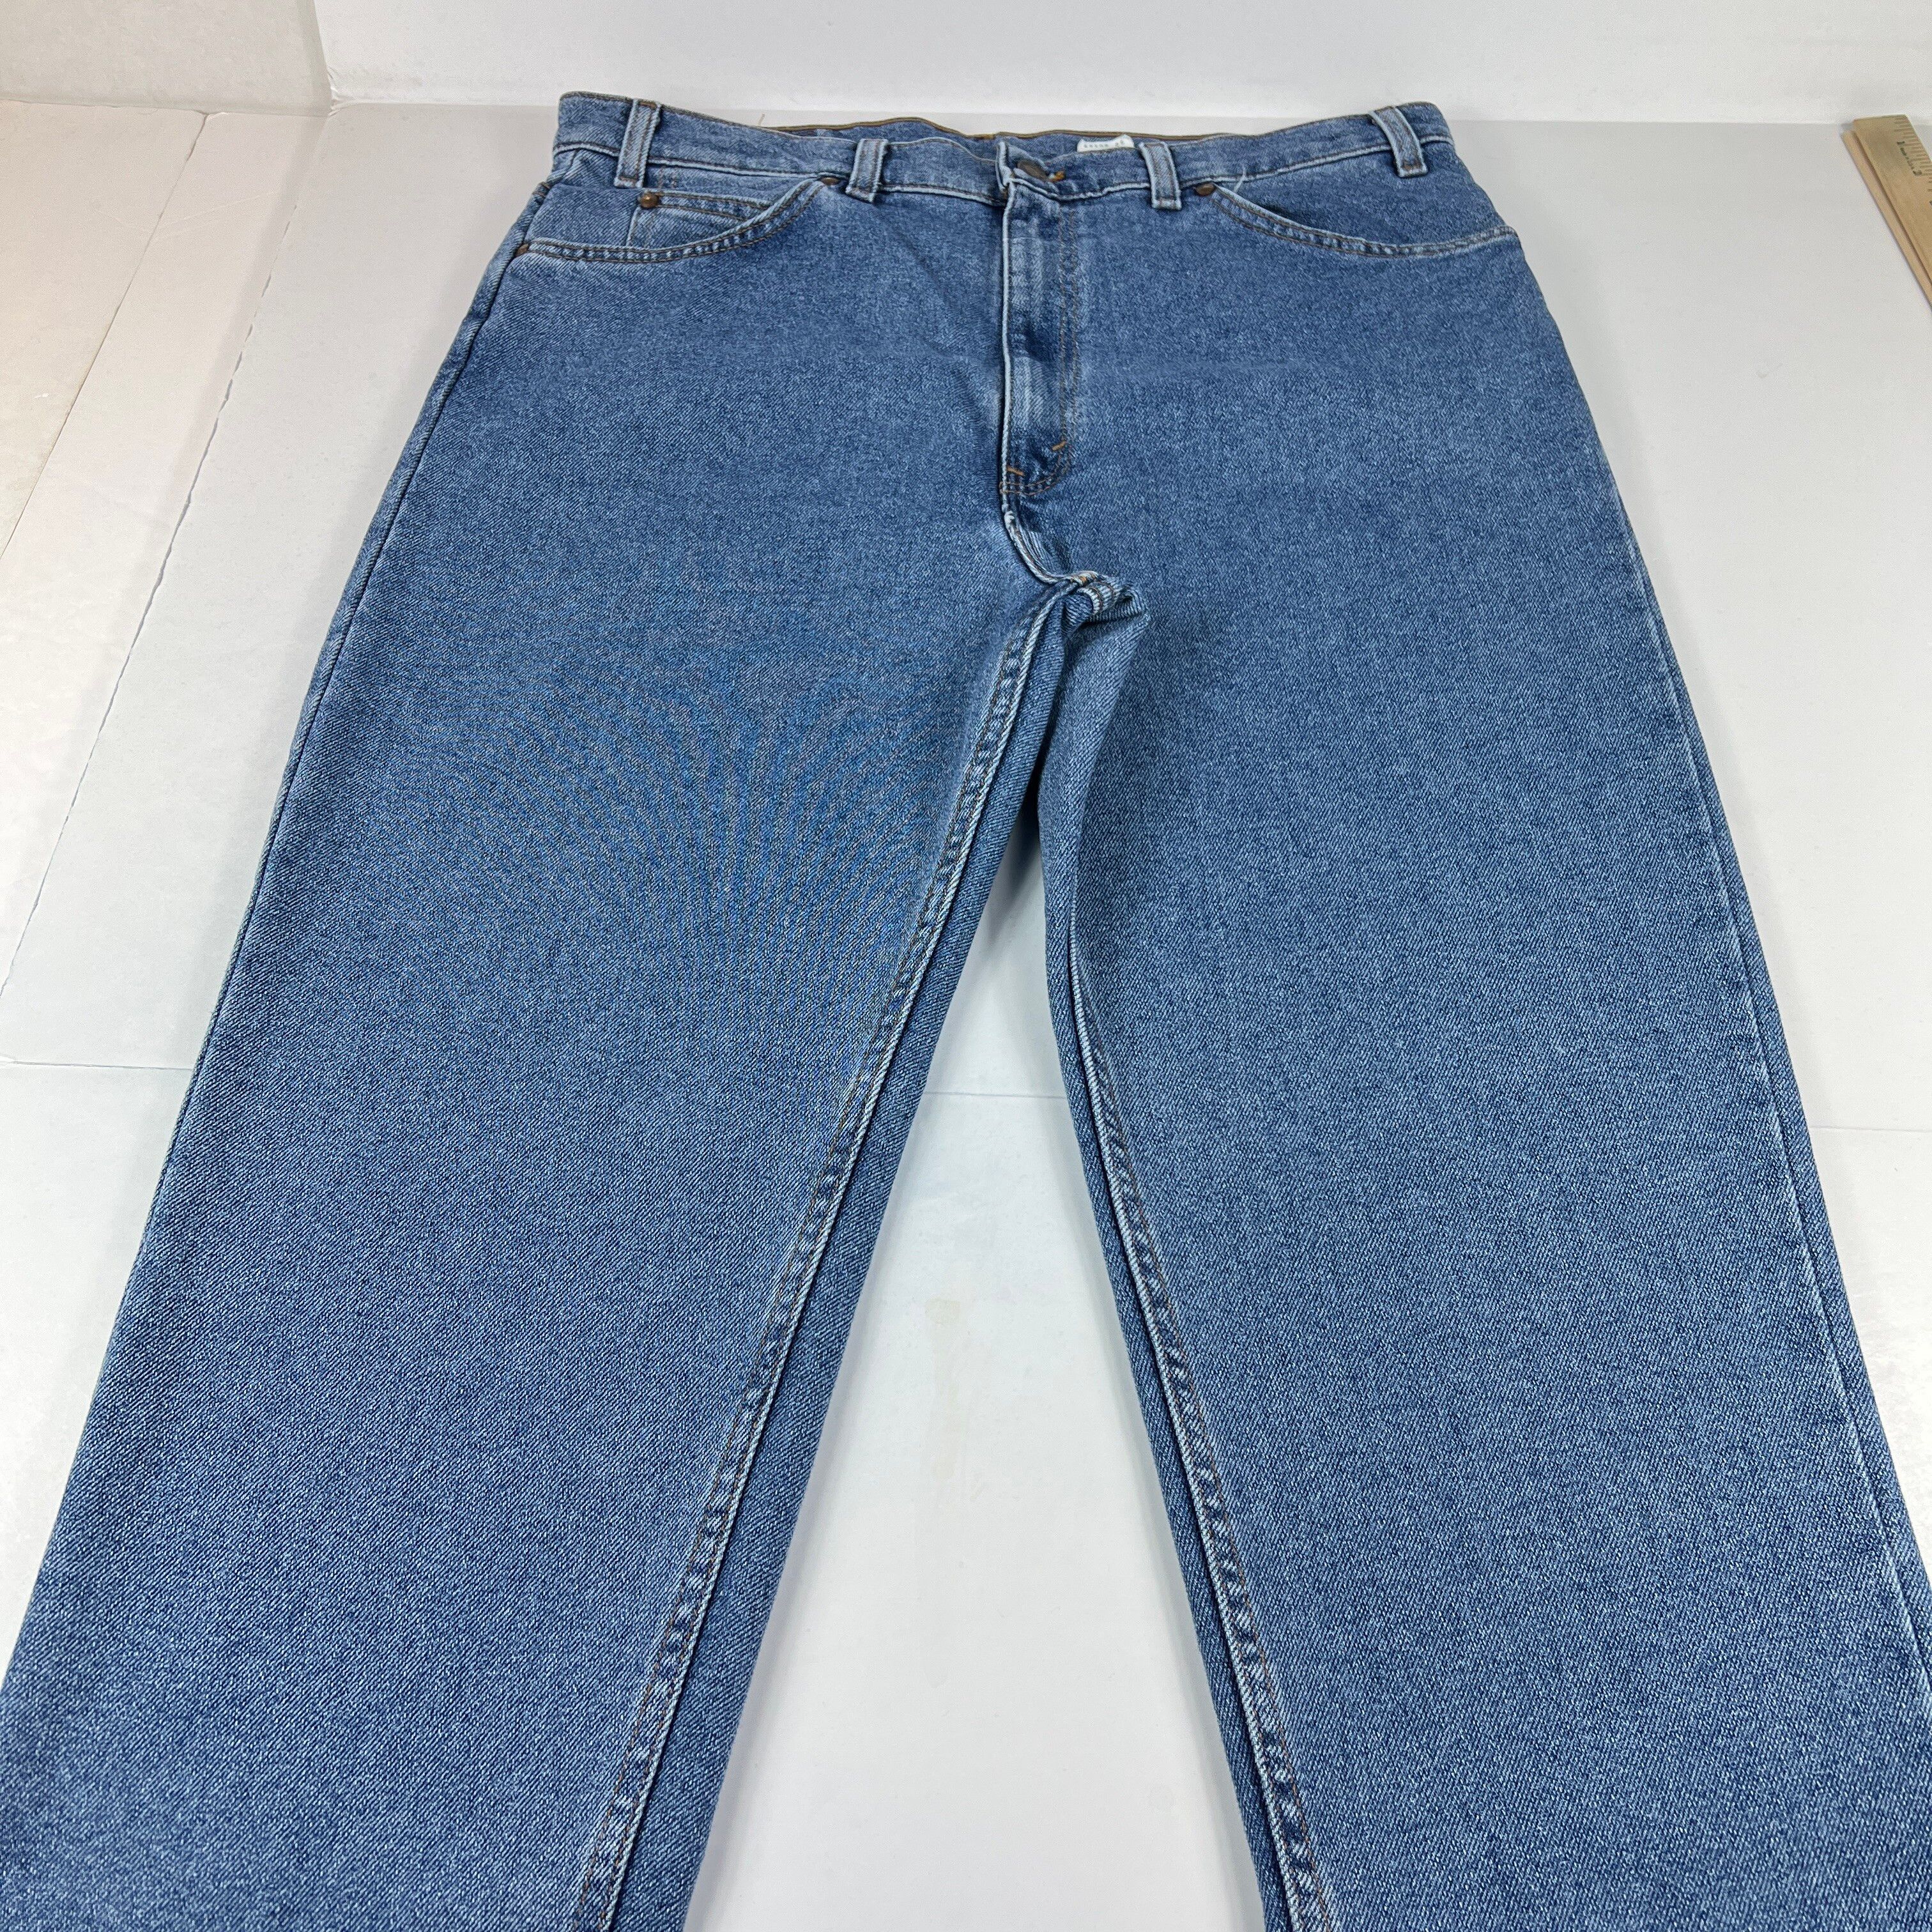 Vintage VTG 90s Levi's Jeans 540 Flex Relaxed Straight Blue Denim Size US 36 / EU 52 - 1 Preview